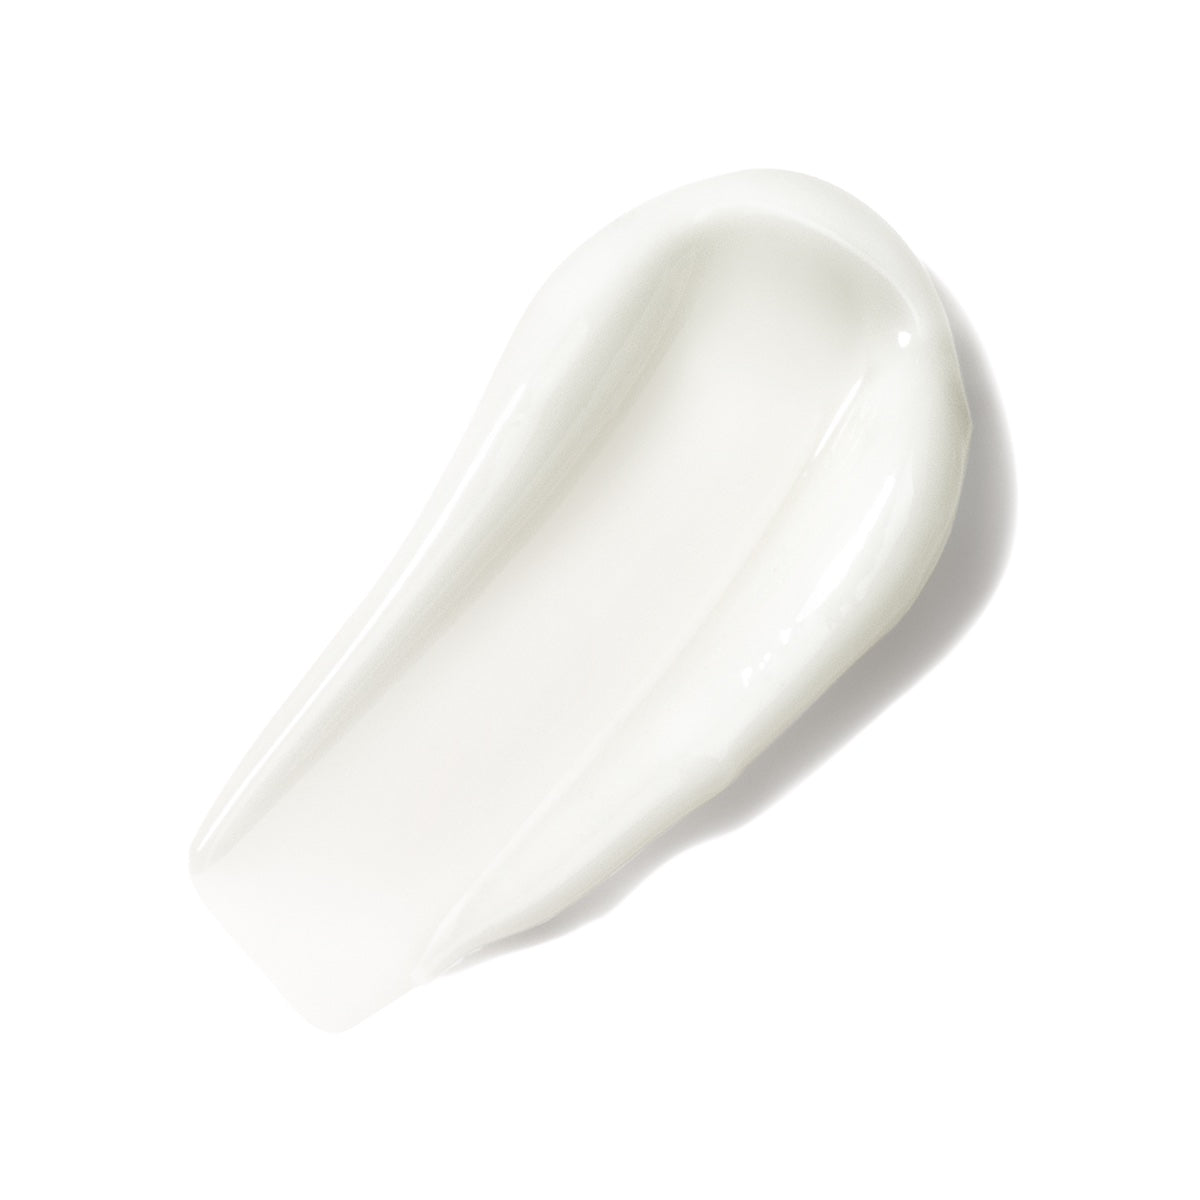 White facial cream swatch smear Drench facial cream moisturizer peptide ceramide antioxidant Dermal Essentials Medical Grade Skincare